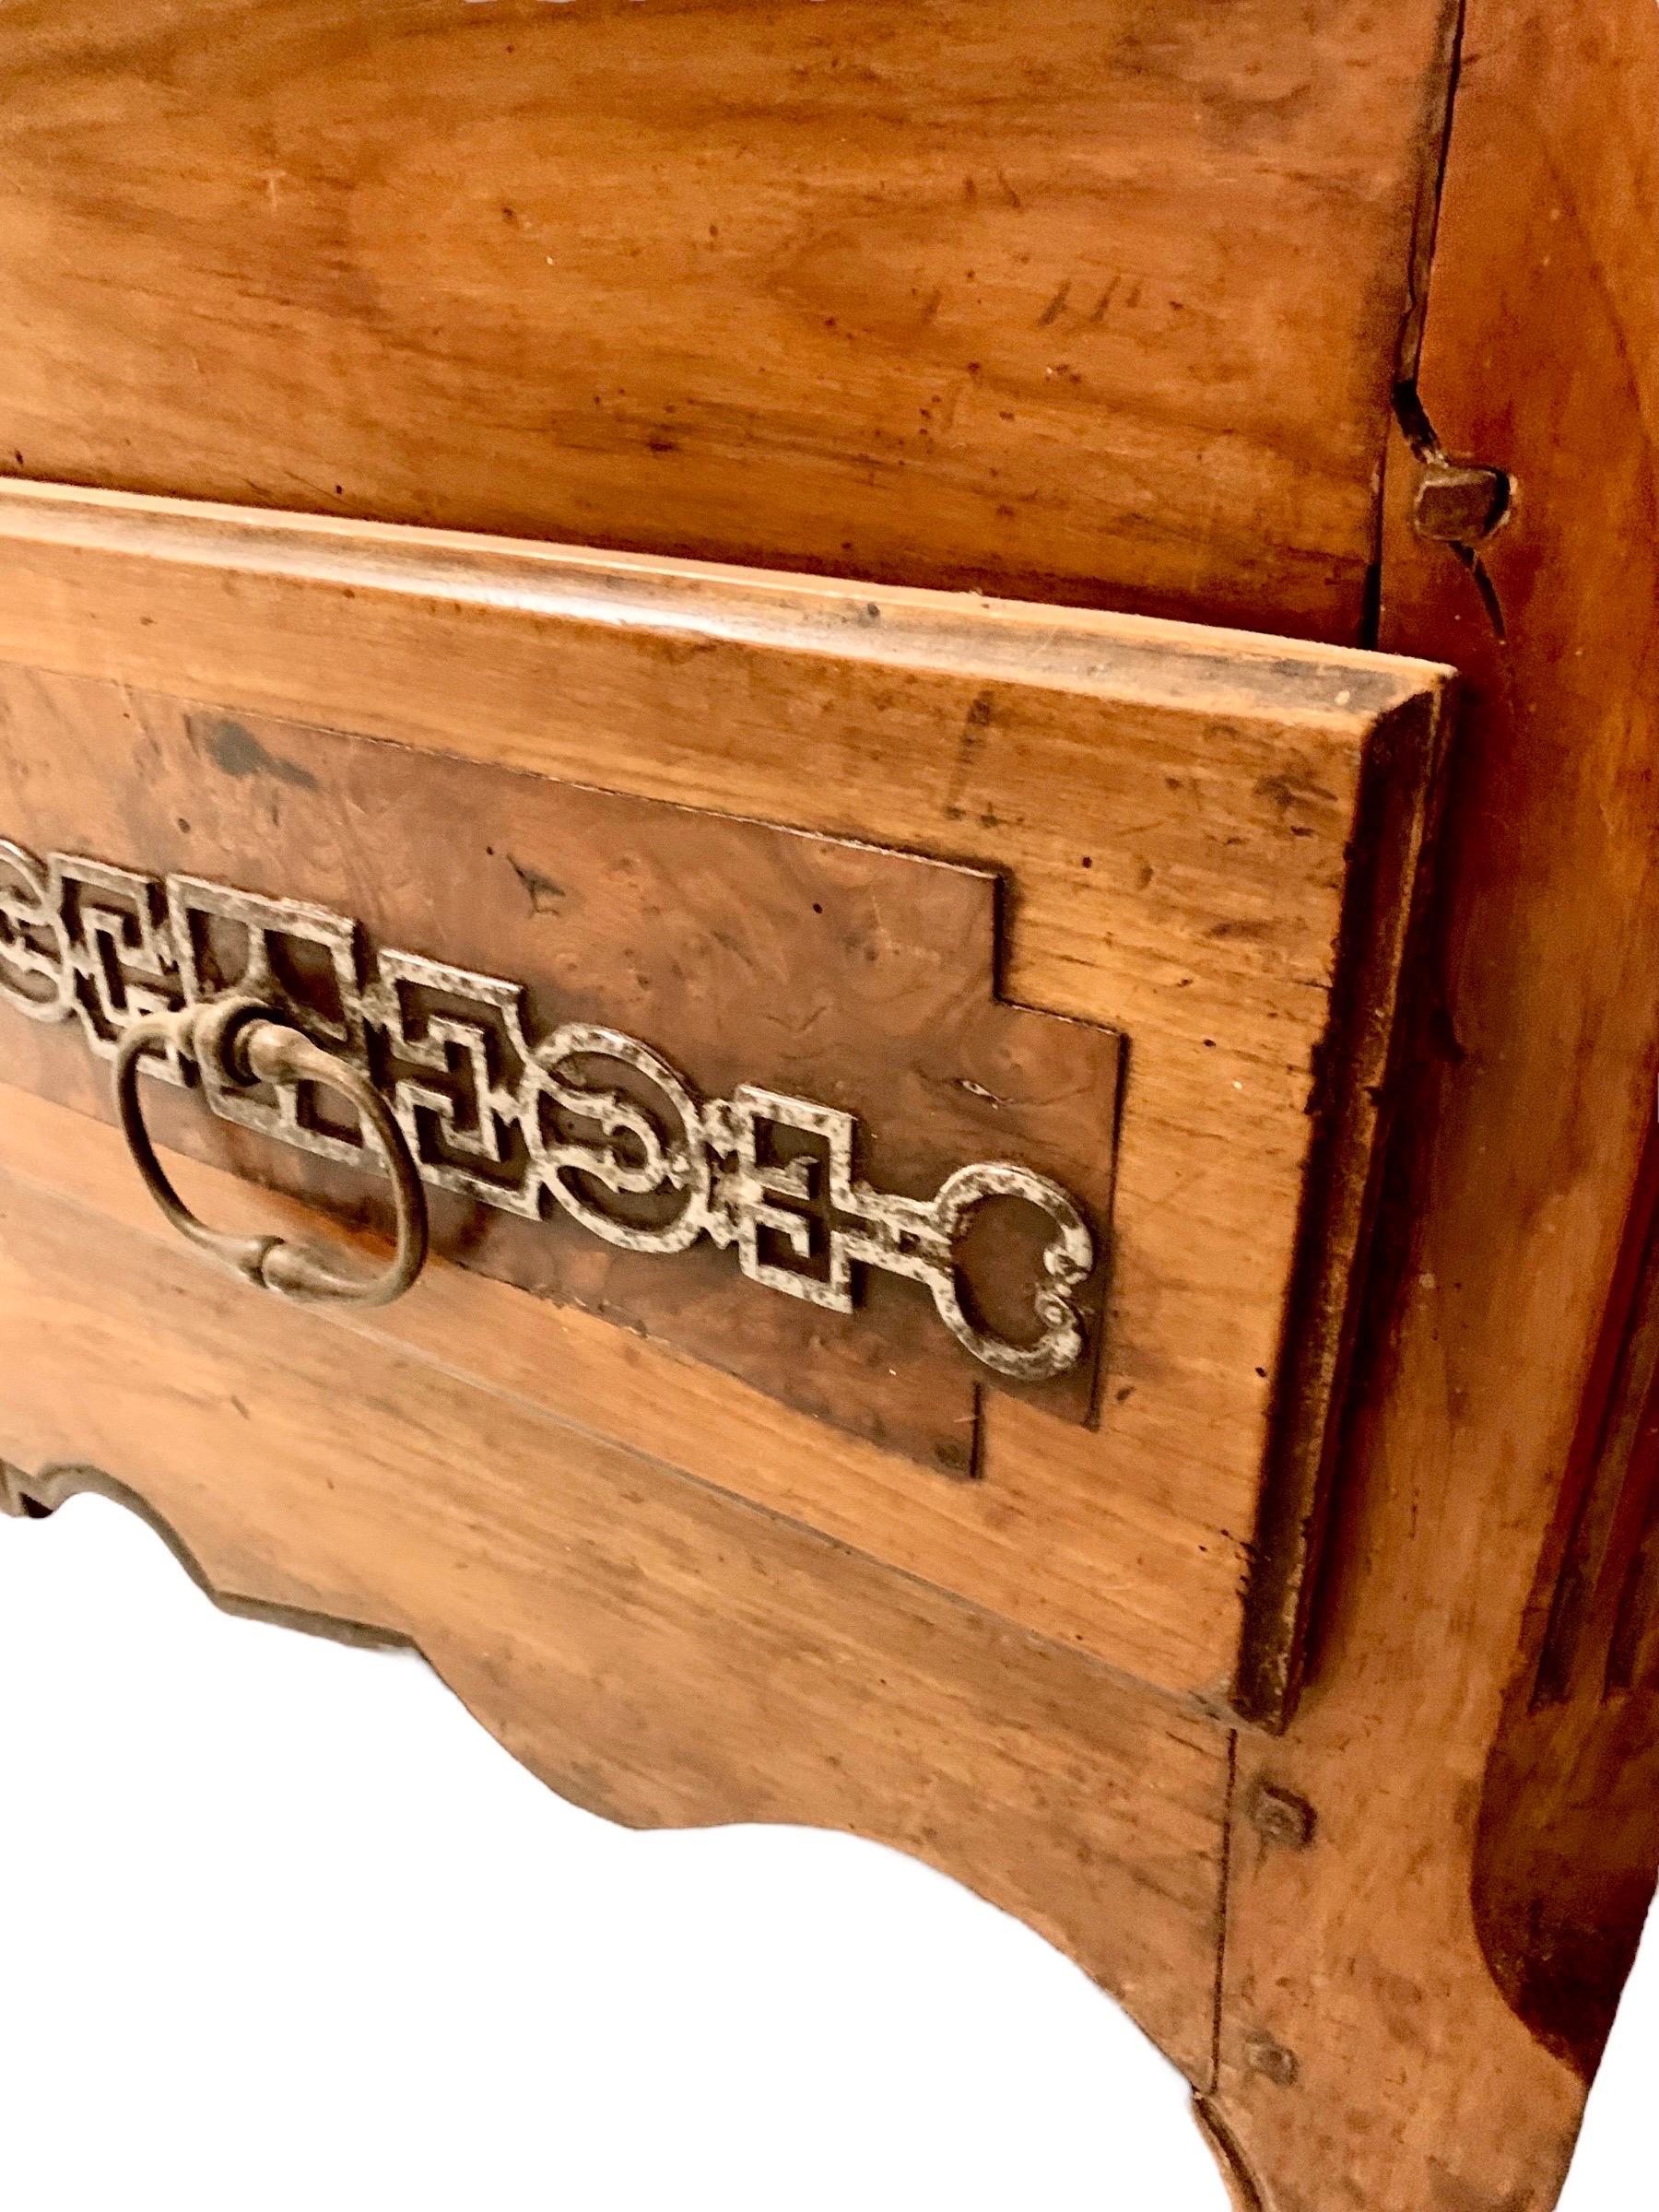 Une exquise armoire en bois de ronce et orme sculpté à la main, de fabrication française, datant du début du 19e siècle, avec de superbes charnières d'origine en fer forgé de type Fitch, des entrées de serrure, des serrures avec clés et des poignées